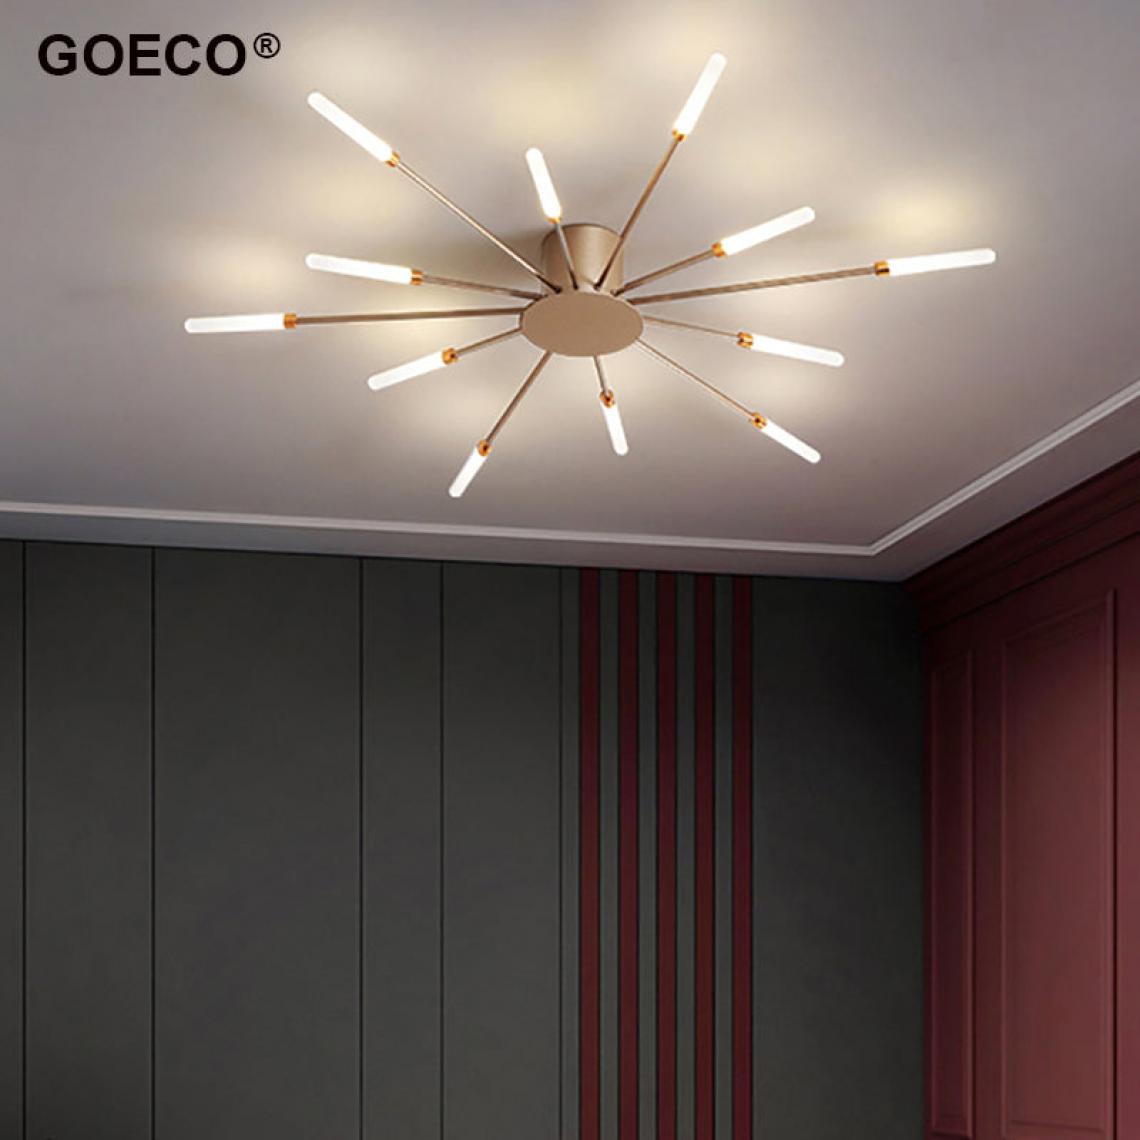 Goeco - Lustre de plafond moderne feu d'artifice Led plafonnier pour la maison salon chambre salle à manger cuisine éclairage intérieur - Plafonniers